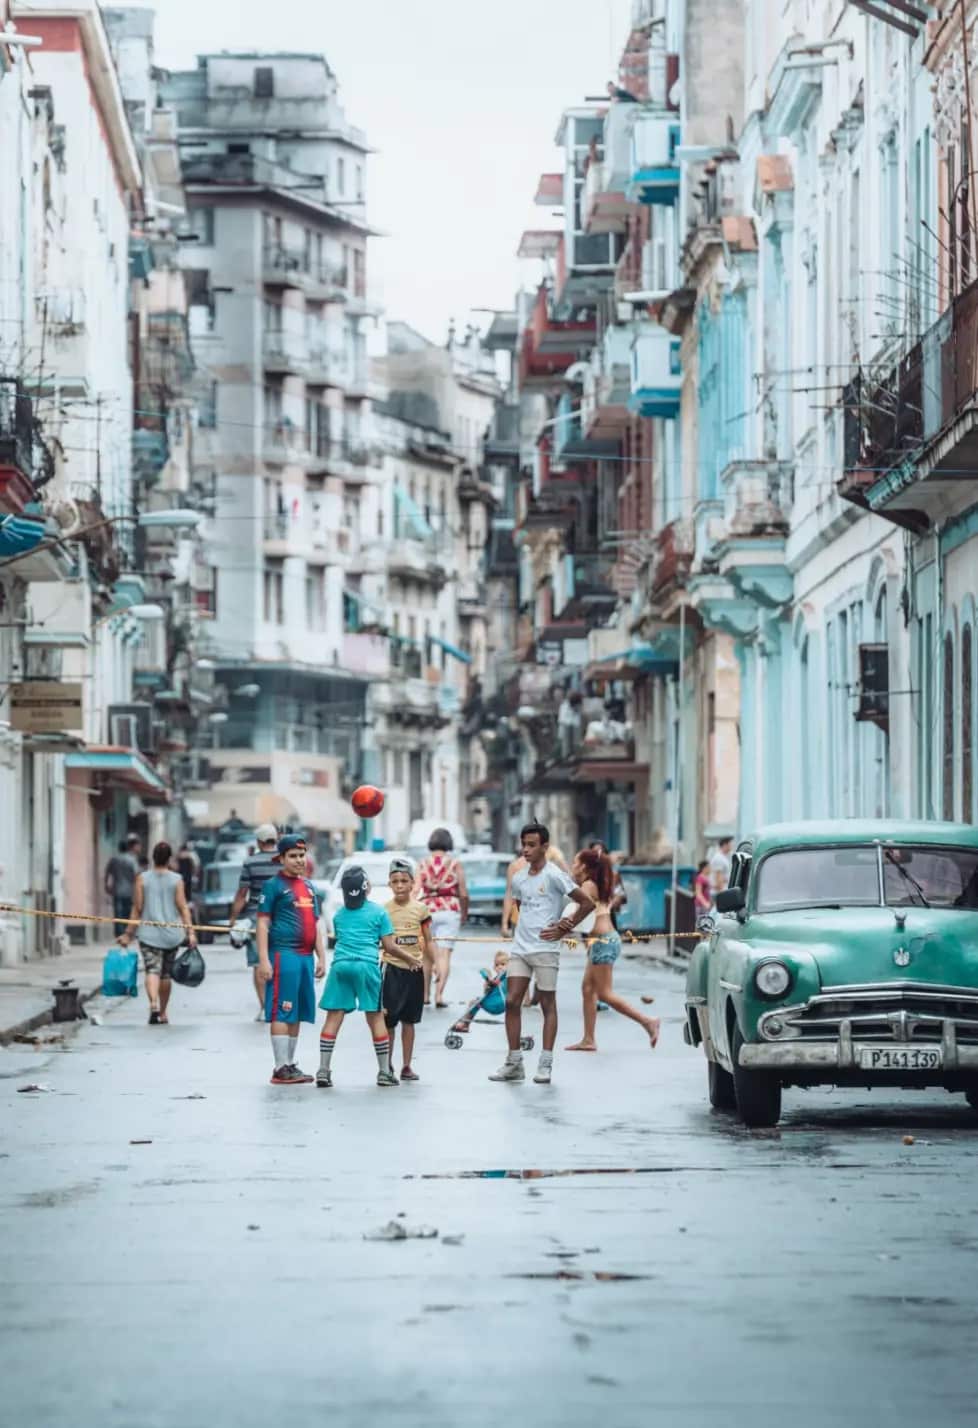 A Taste of Cuba, 2017, by Monaris